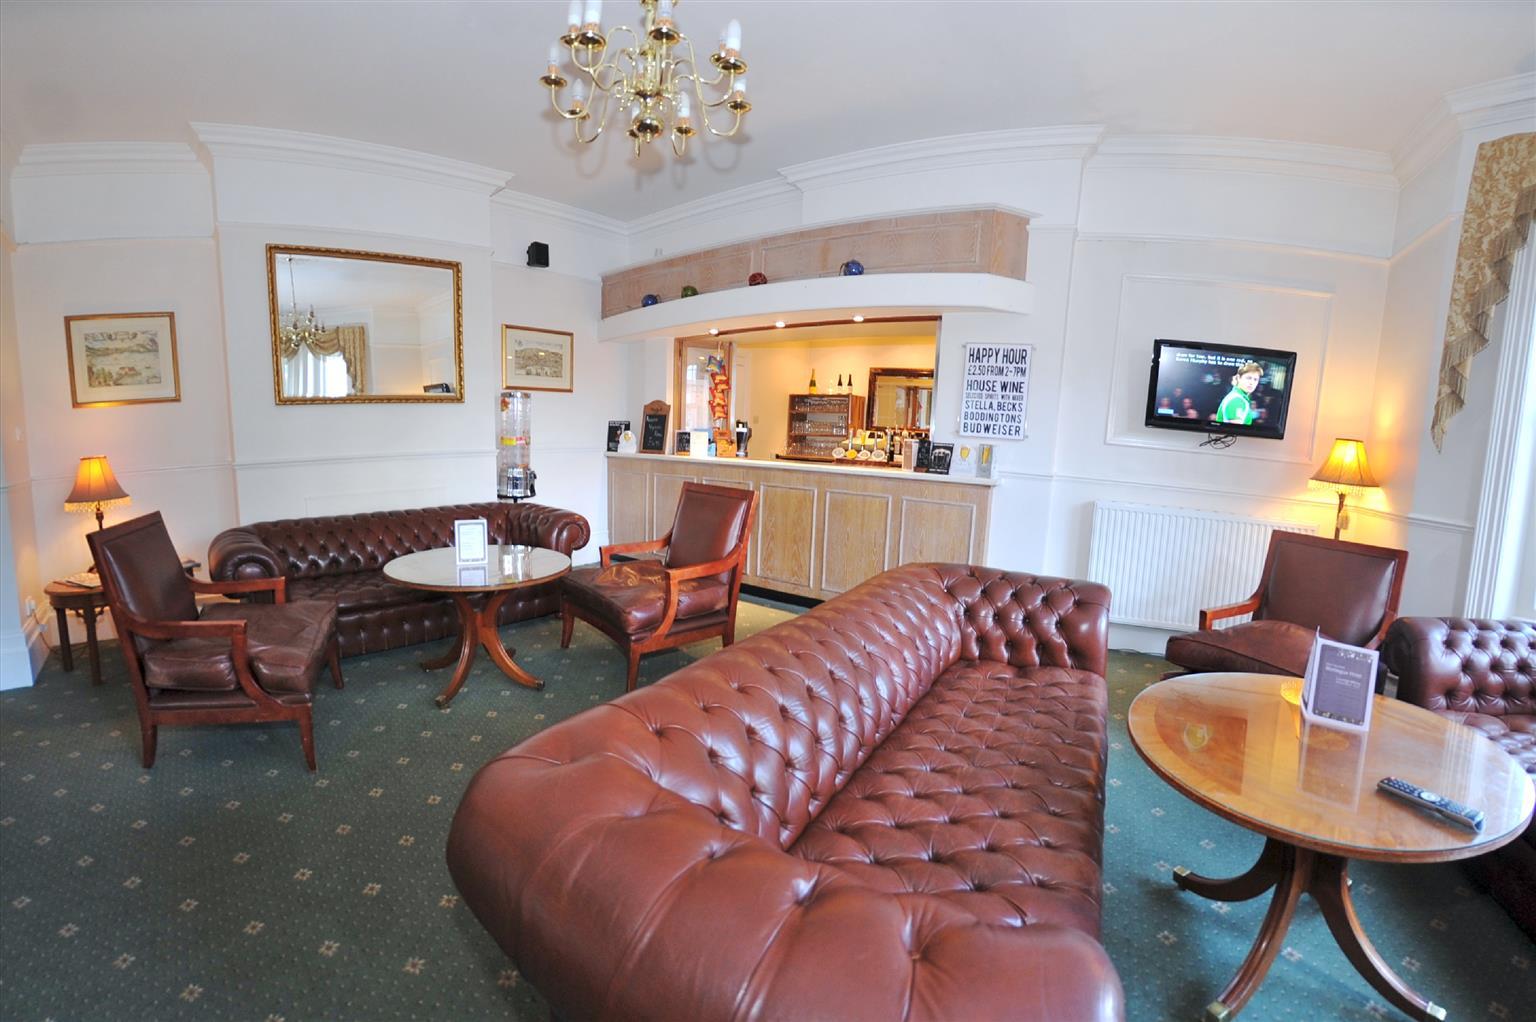 Montague Hotel Bournemouth Restaurant billede